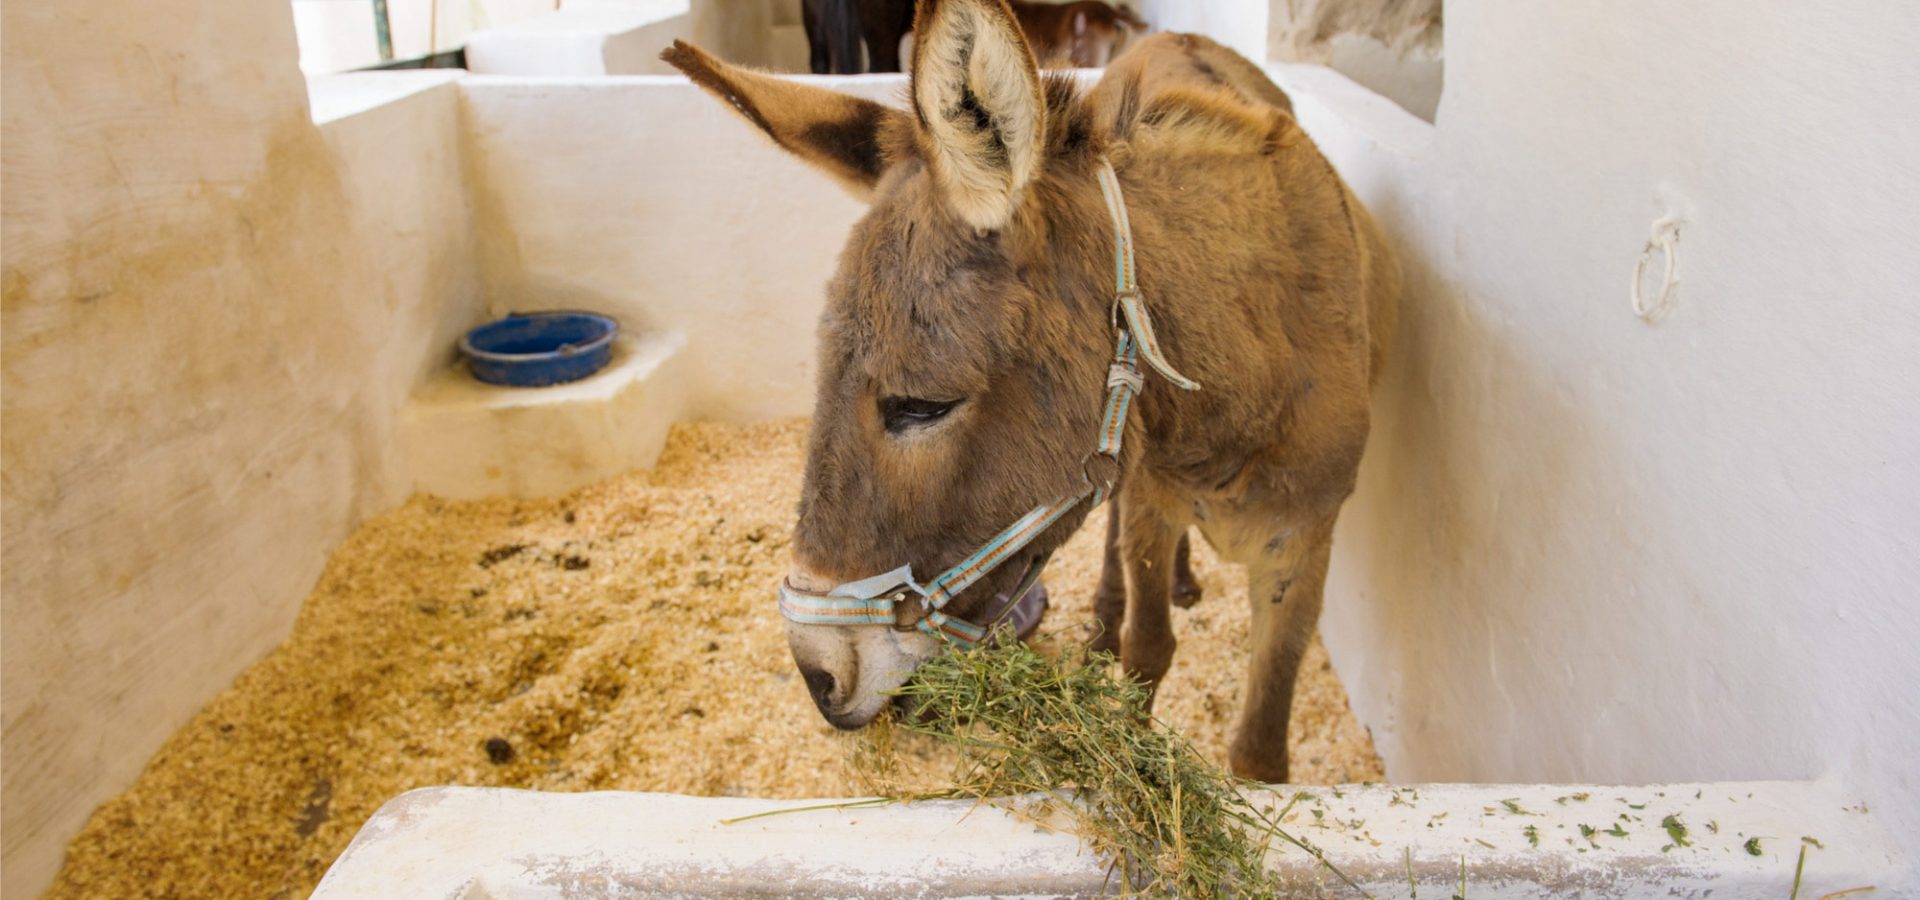 Morocco donkey eating